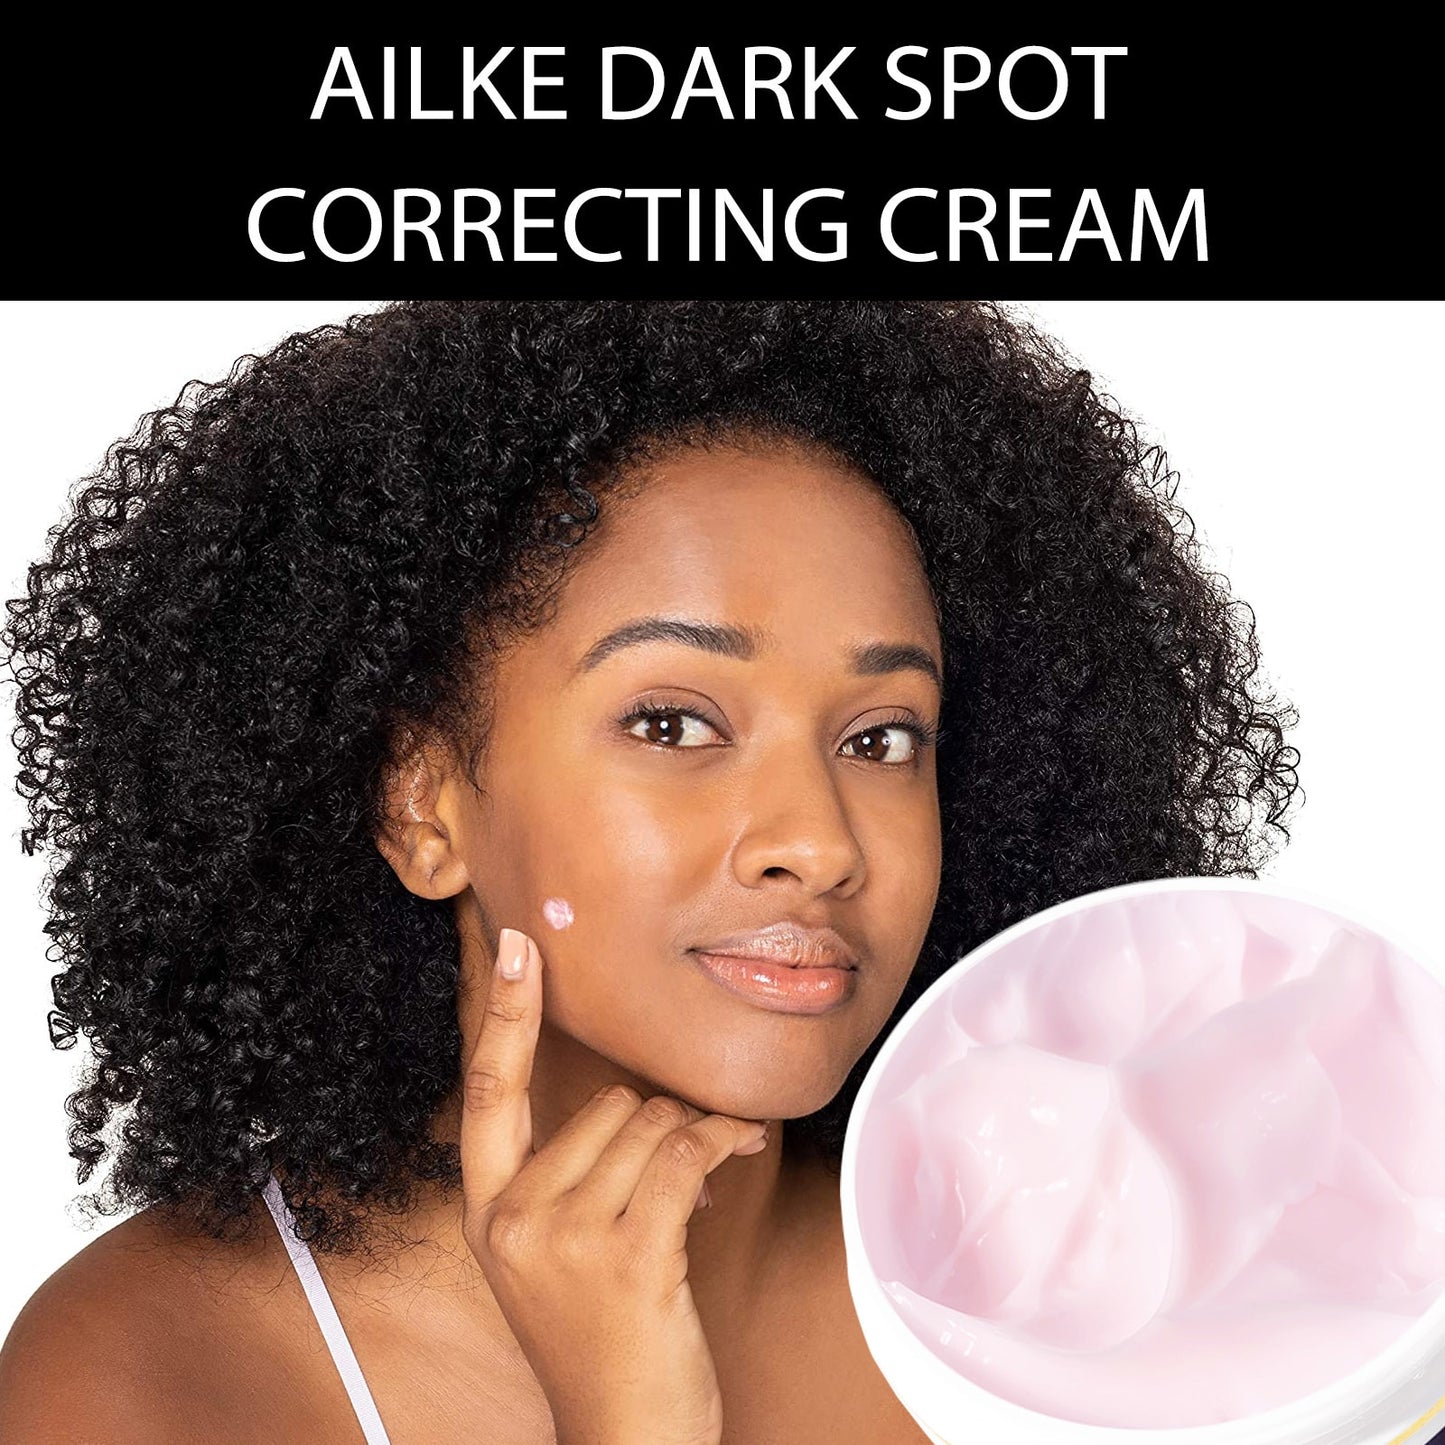 AILKE Glutathione 5-in-1 Women Skin Care Kit